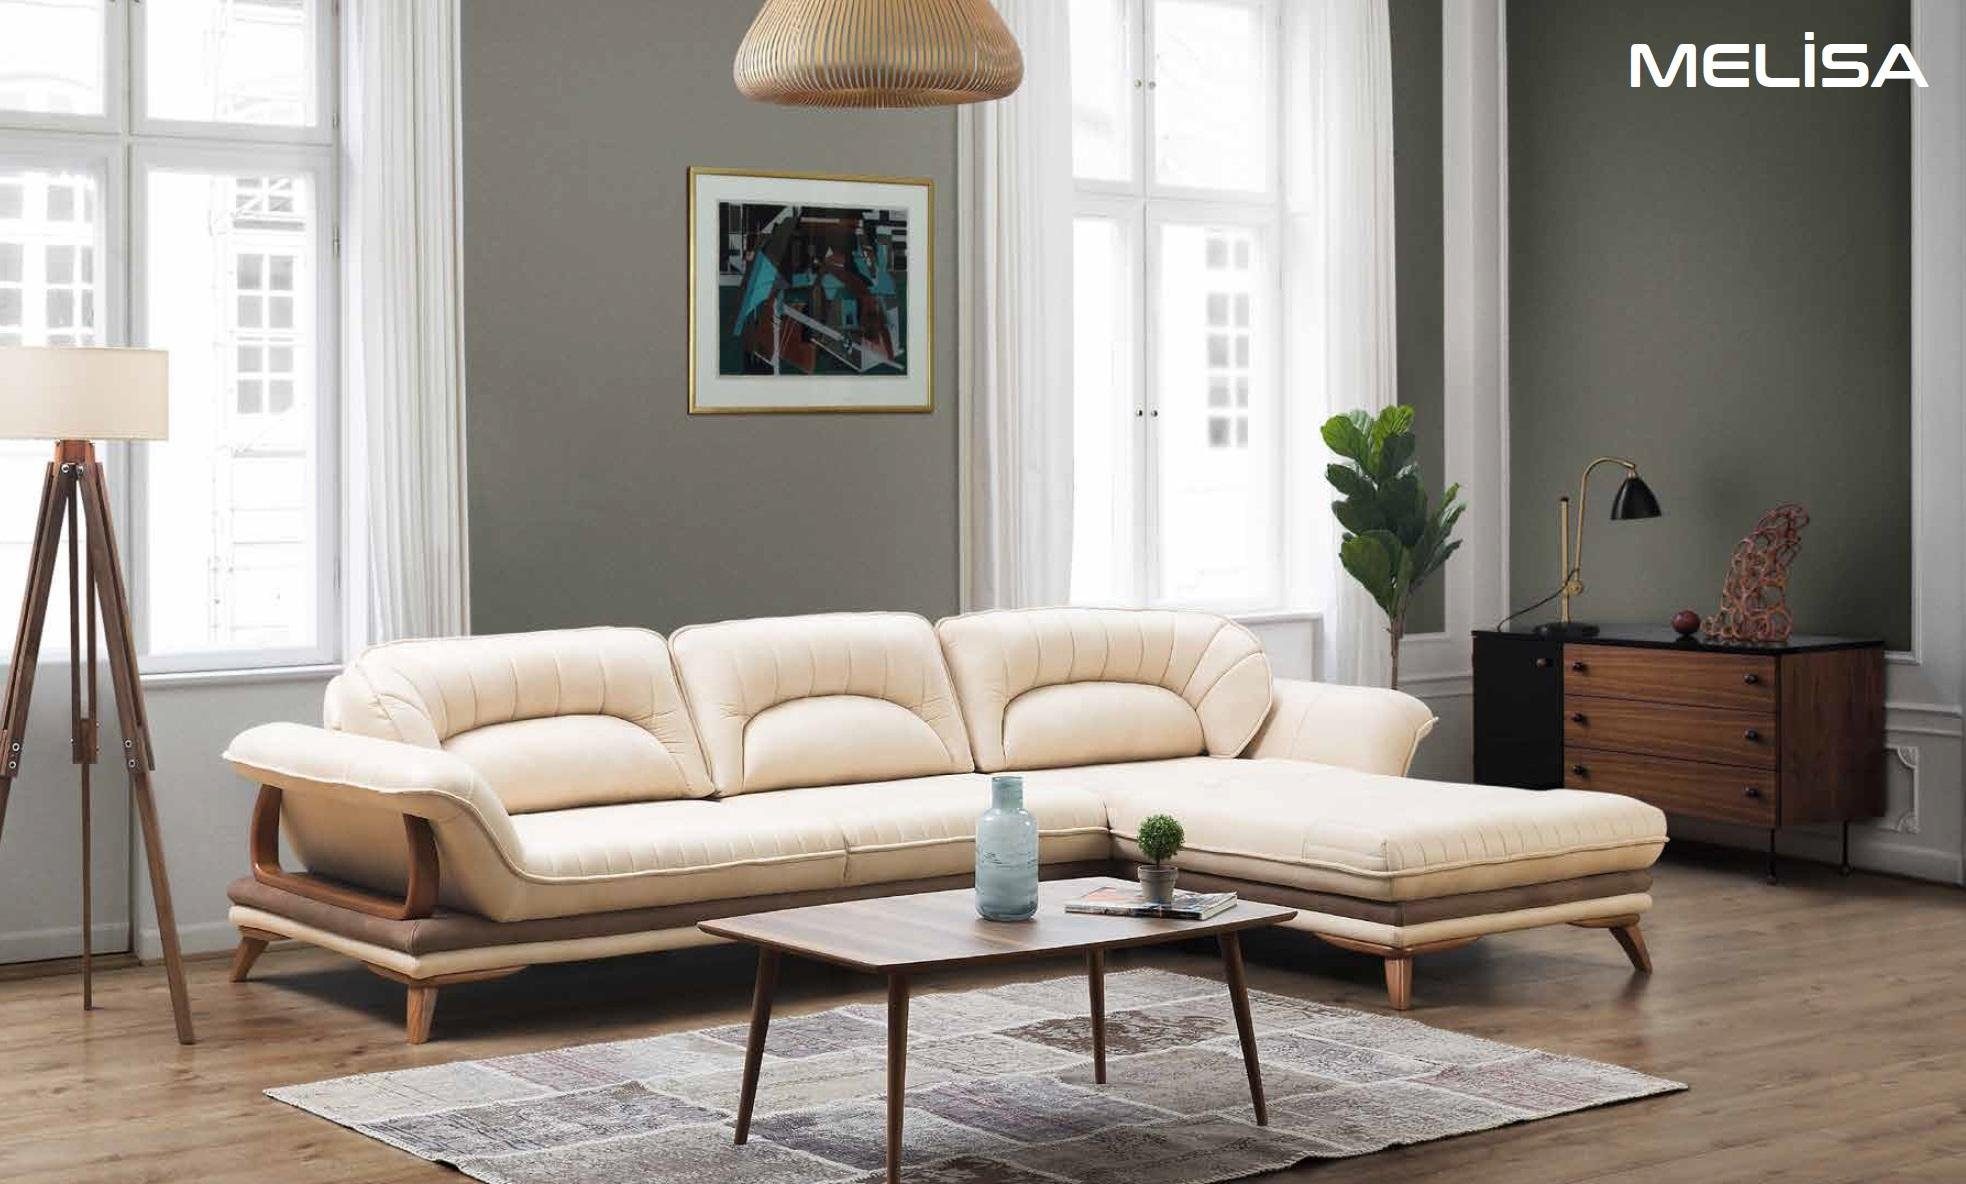 JVmoebel Ecksofa Wohnzimmer Textil L-Form Sofas Weiß Neu Ecksofa Couch, Made in Europe